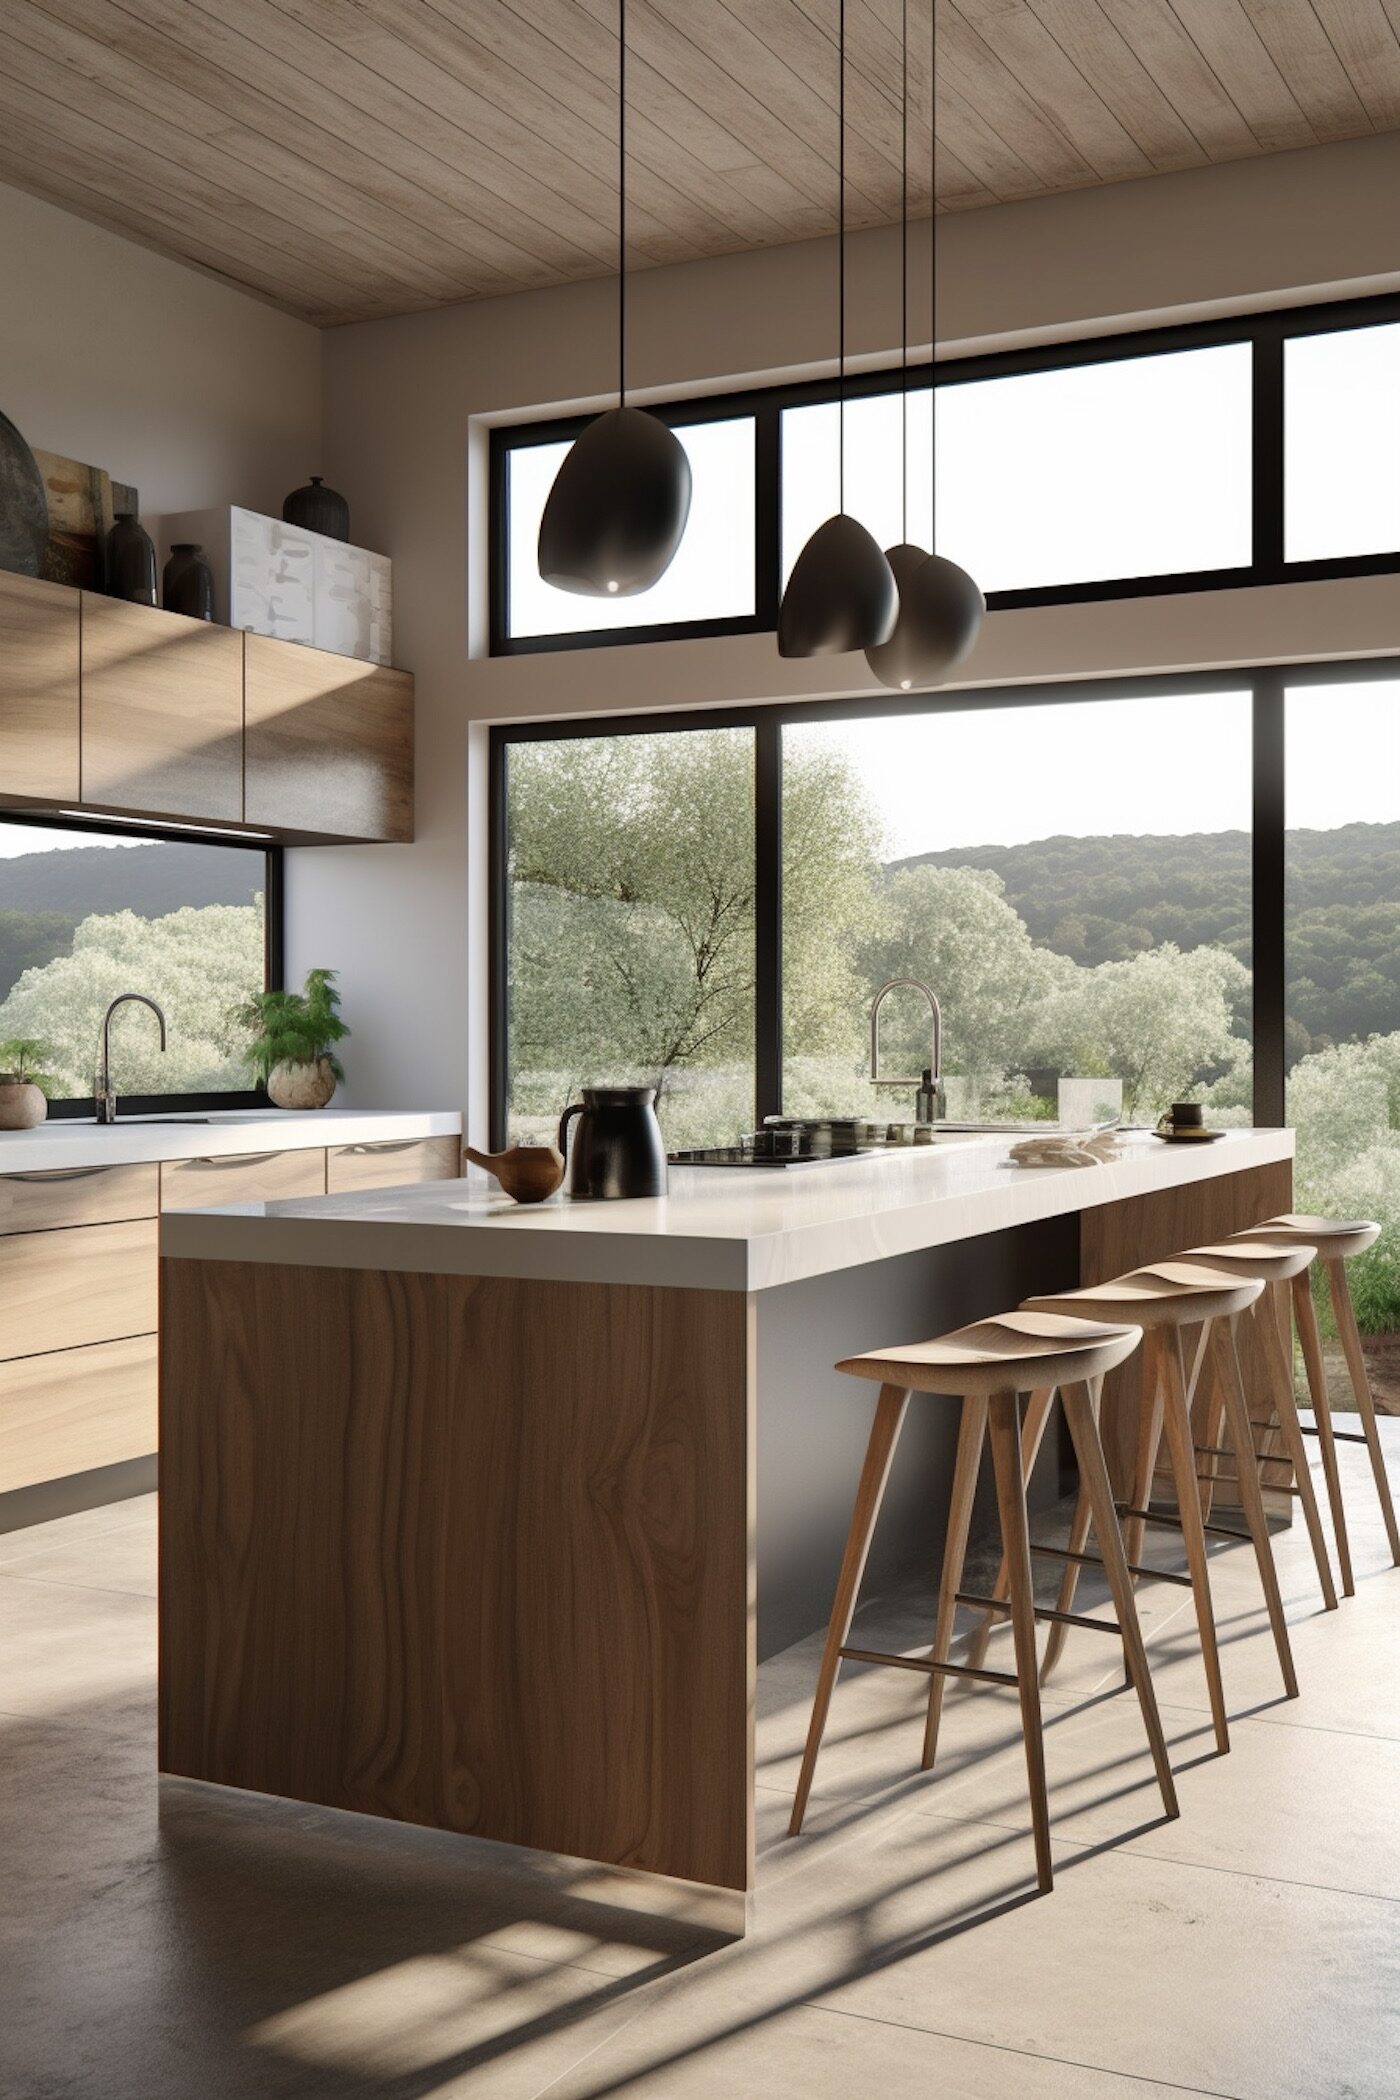 cuisine moderne bois marbre nature chalet loft maison campagne design